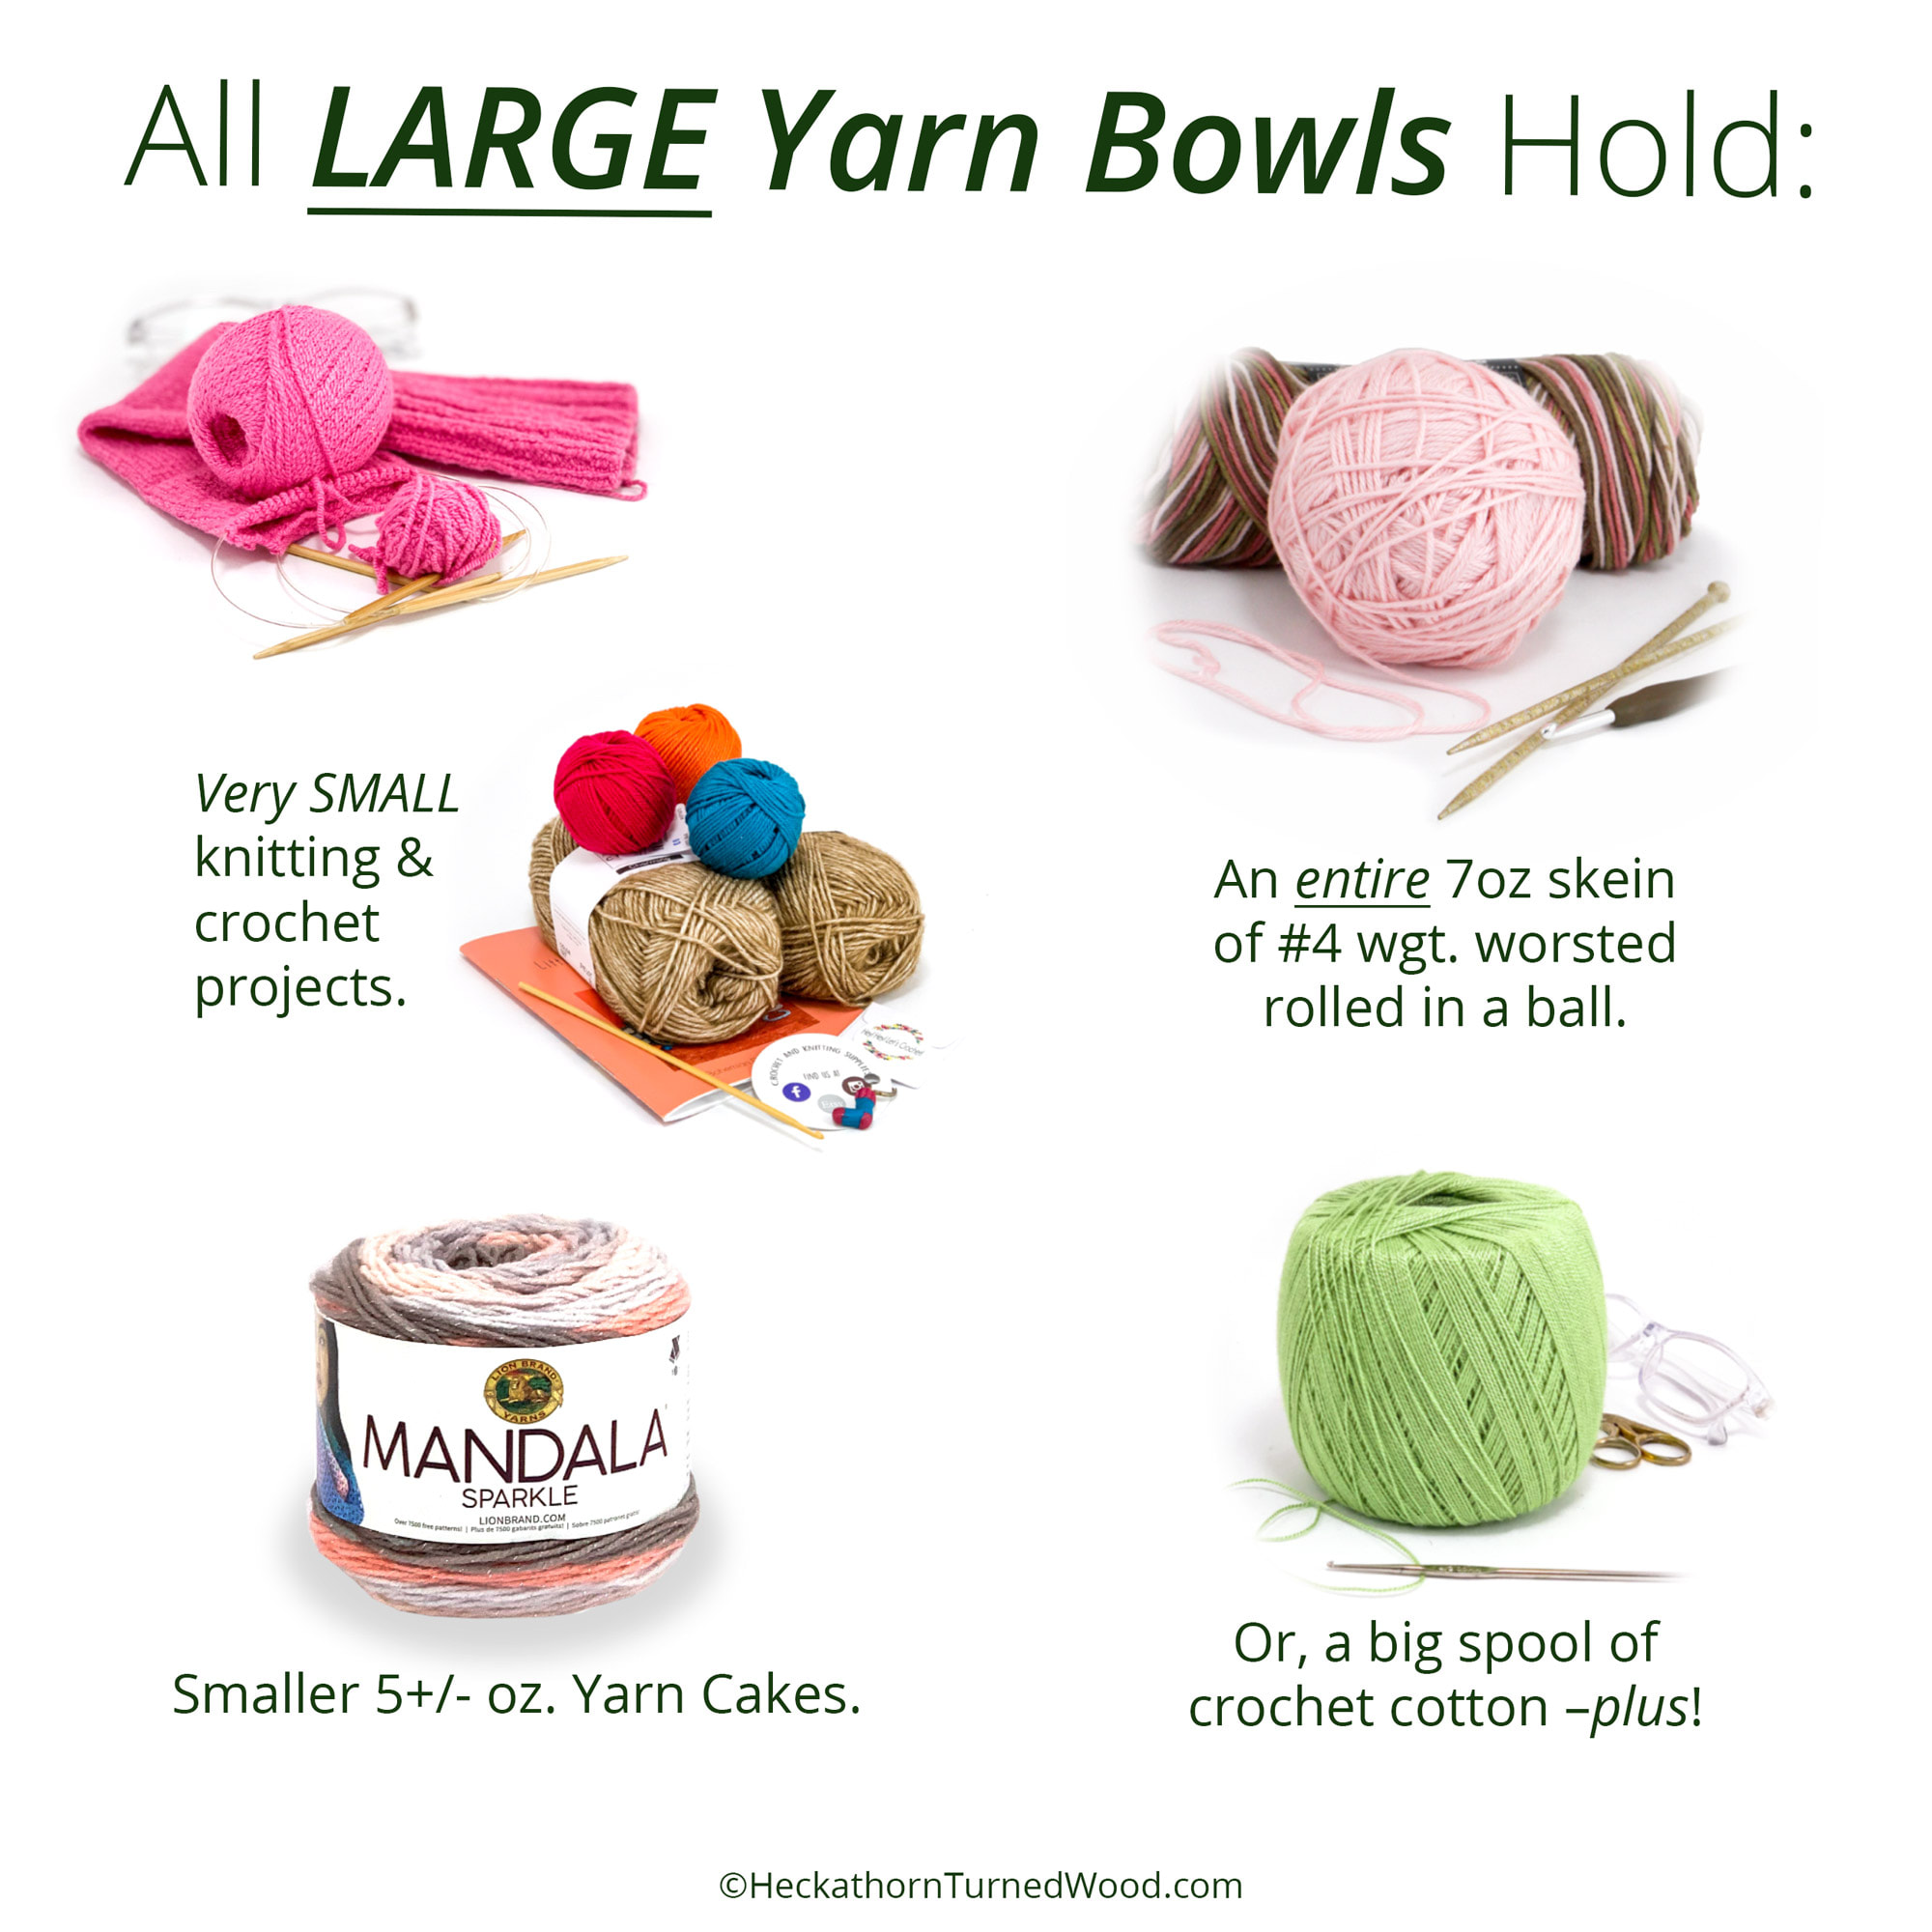 Yarn Bowl Guide - This Year's Best Yarn Bowls - AB Crafty